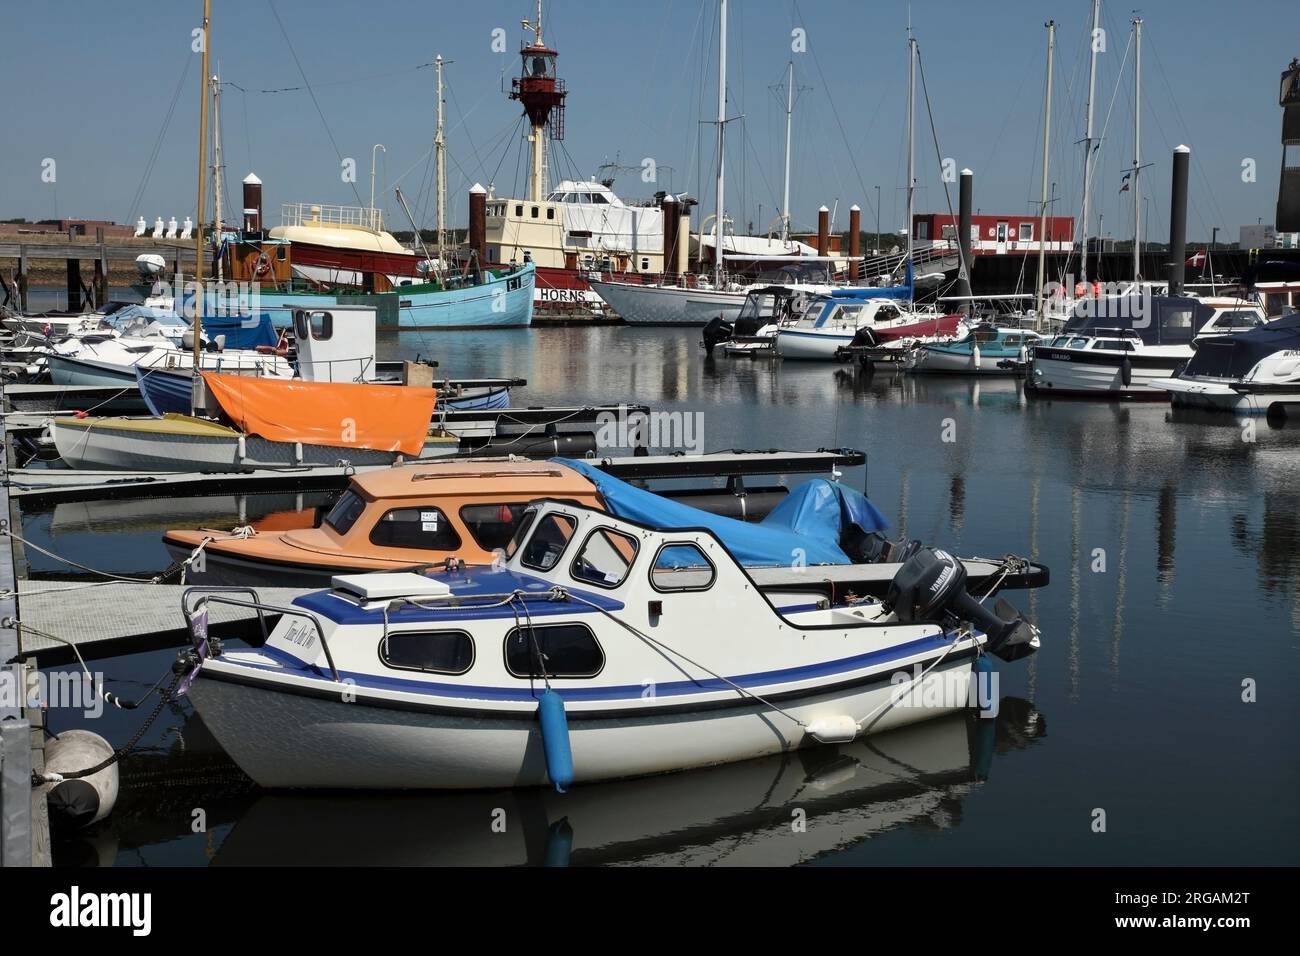 Boats moored in Esbjerg marina, Denmark. Stock Photo